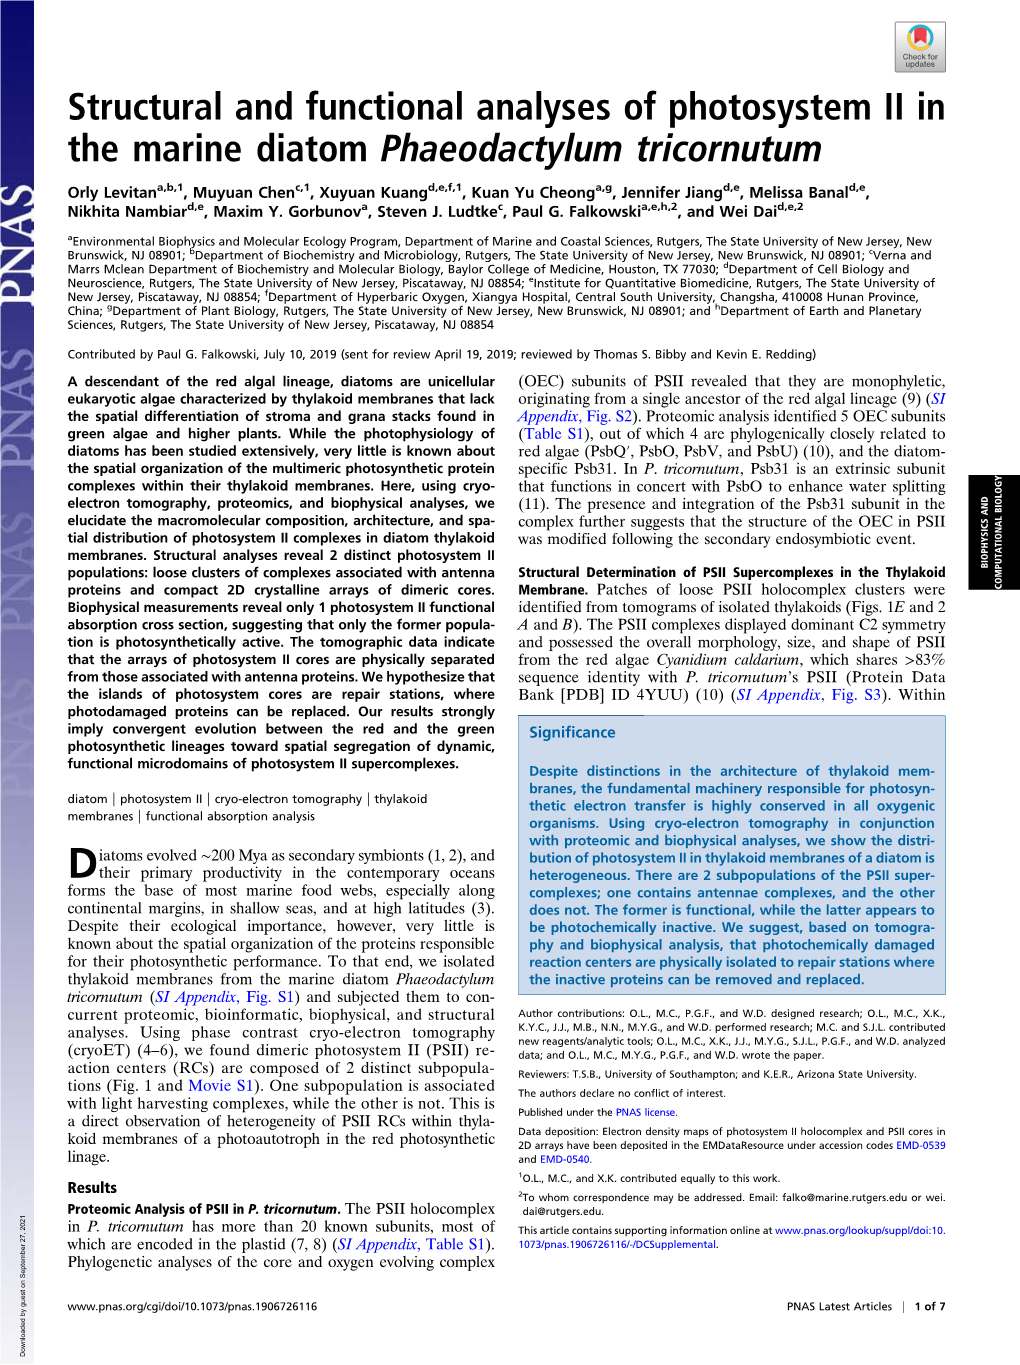 Structural and Functional Analyses of Photosystem II in the Marine Diatom Phaeodactylum Tricornutum